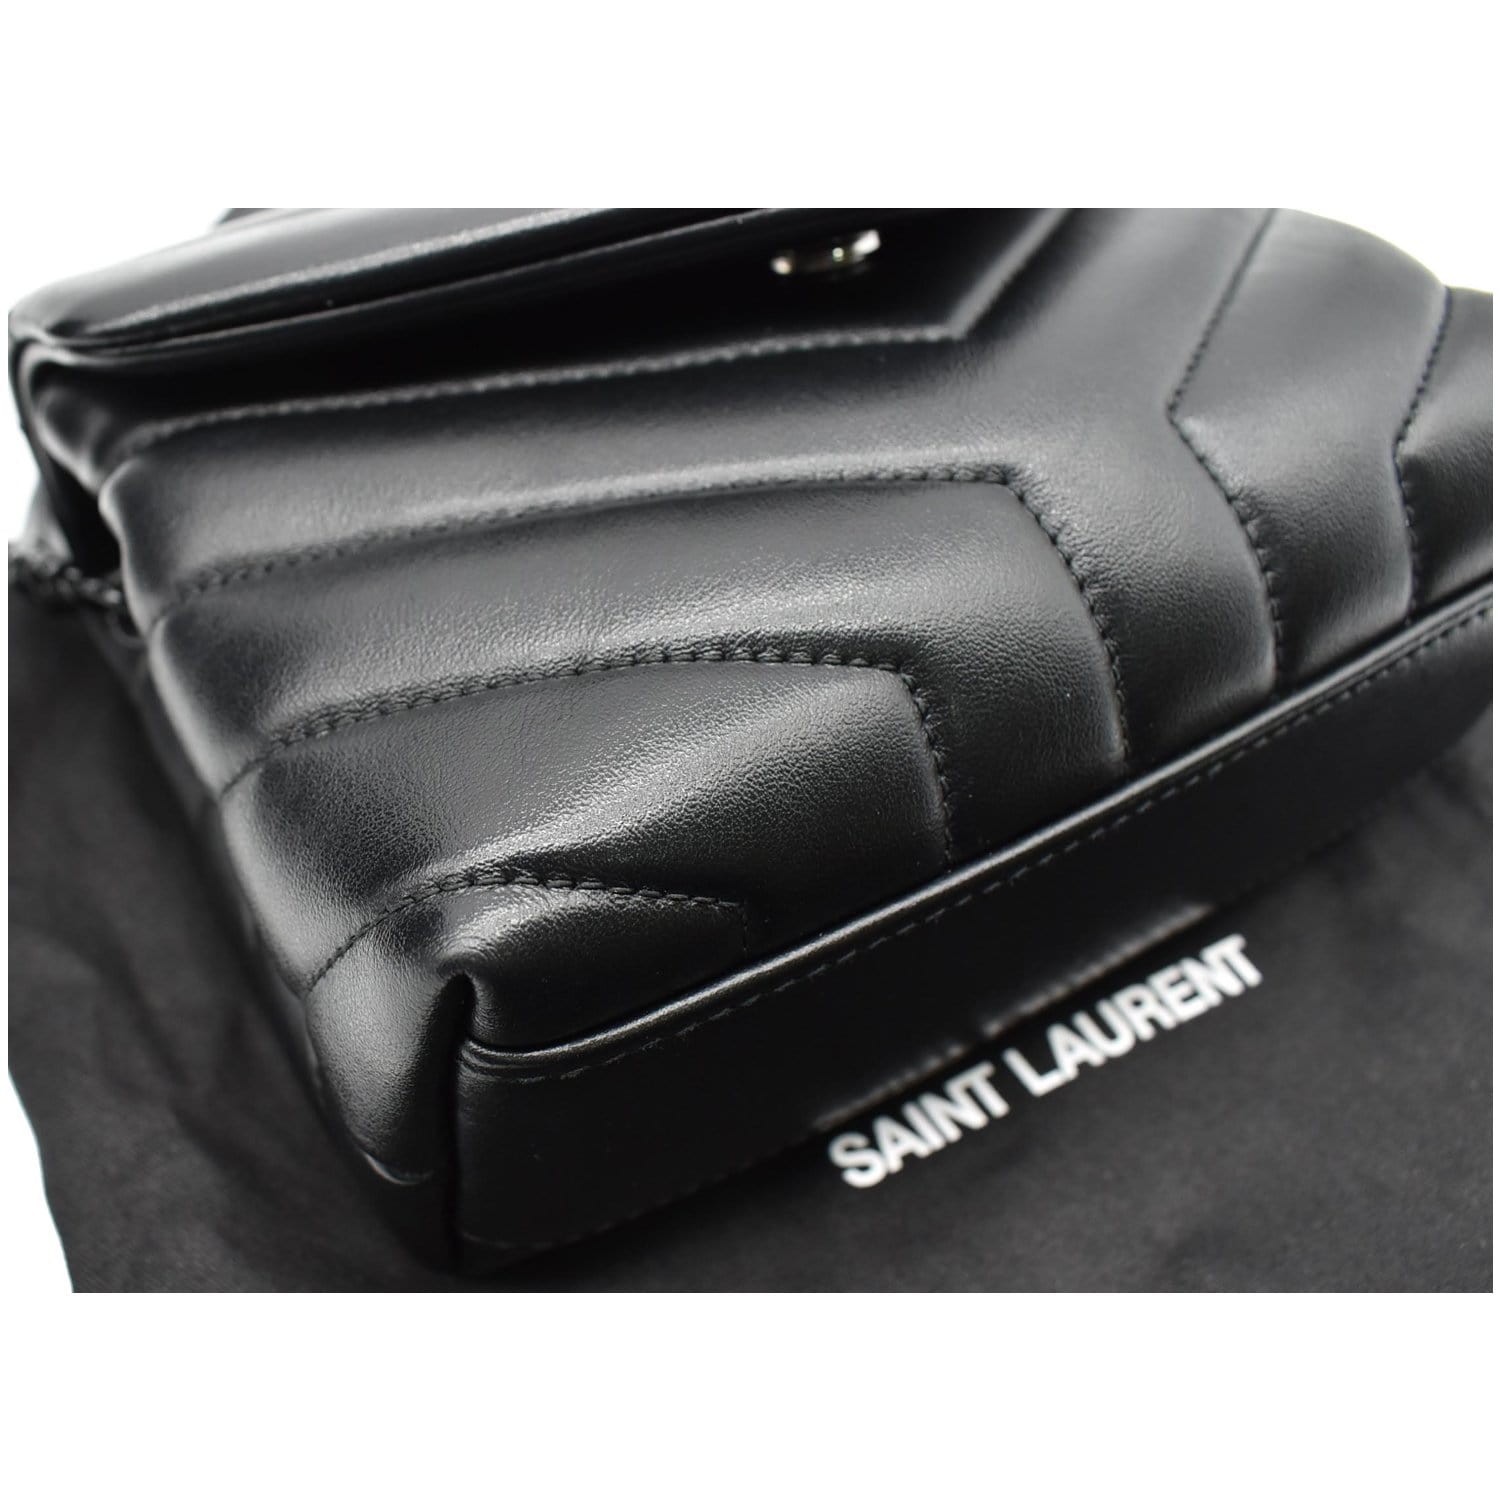 Saint Laurent Toy Loulou Matelassé Leather Crossbody Bag